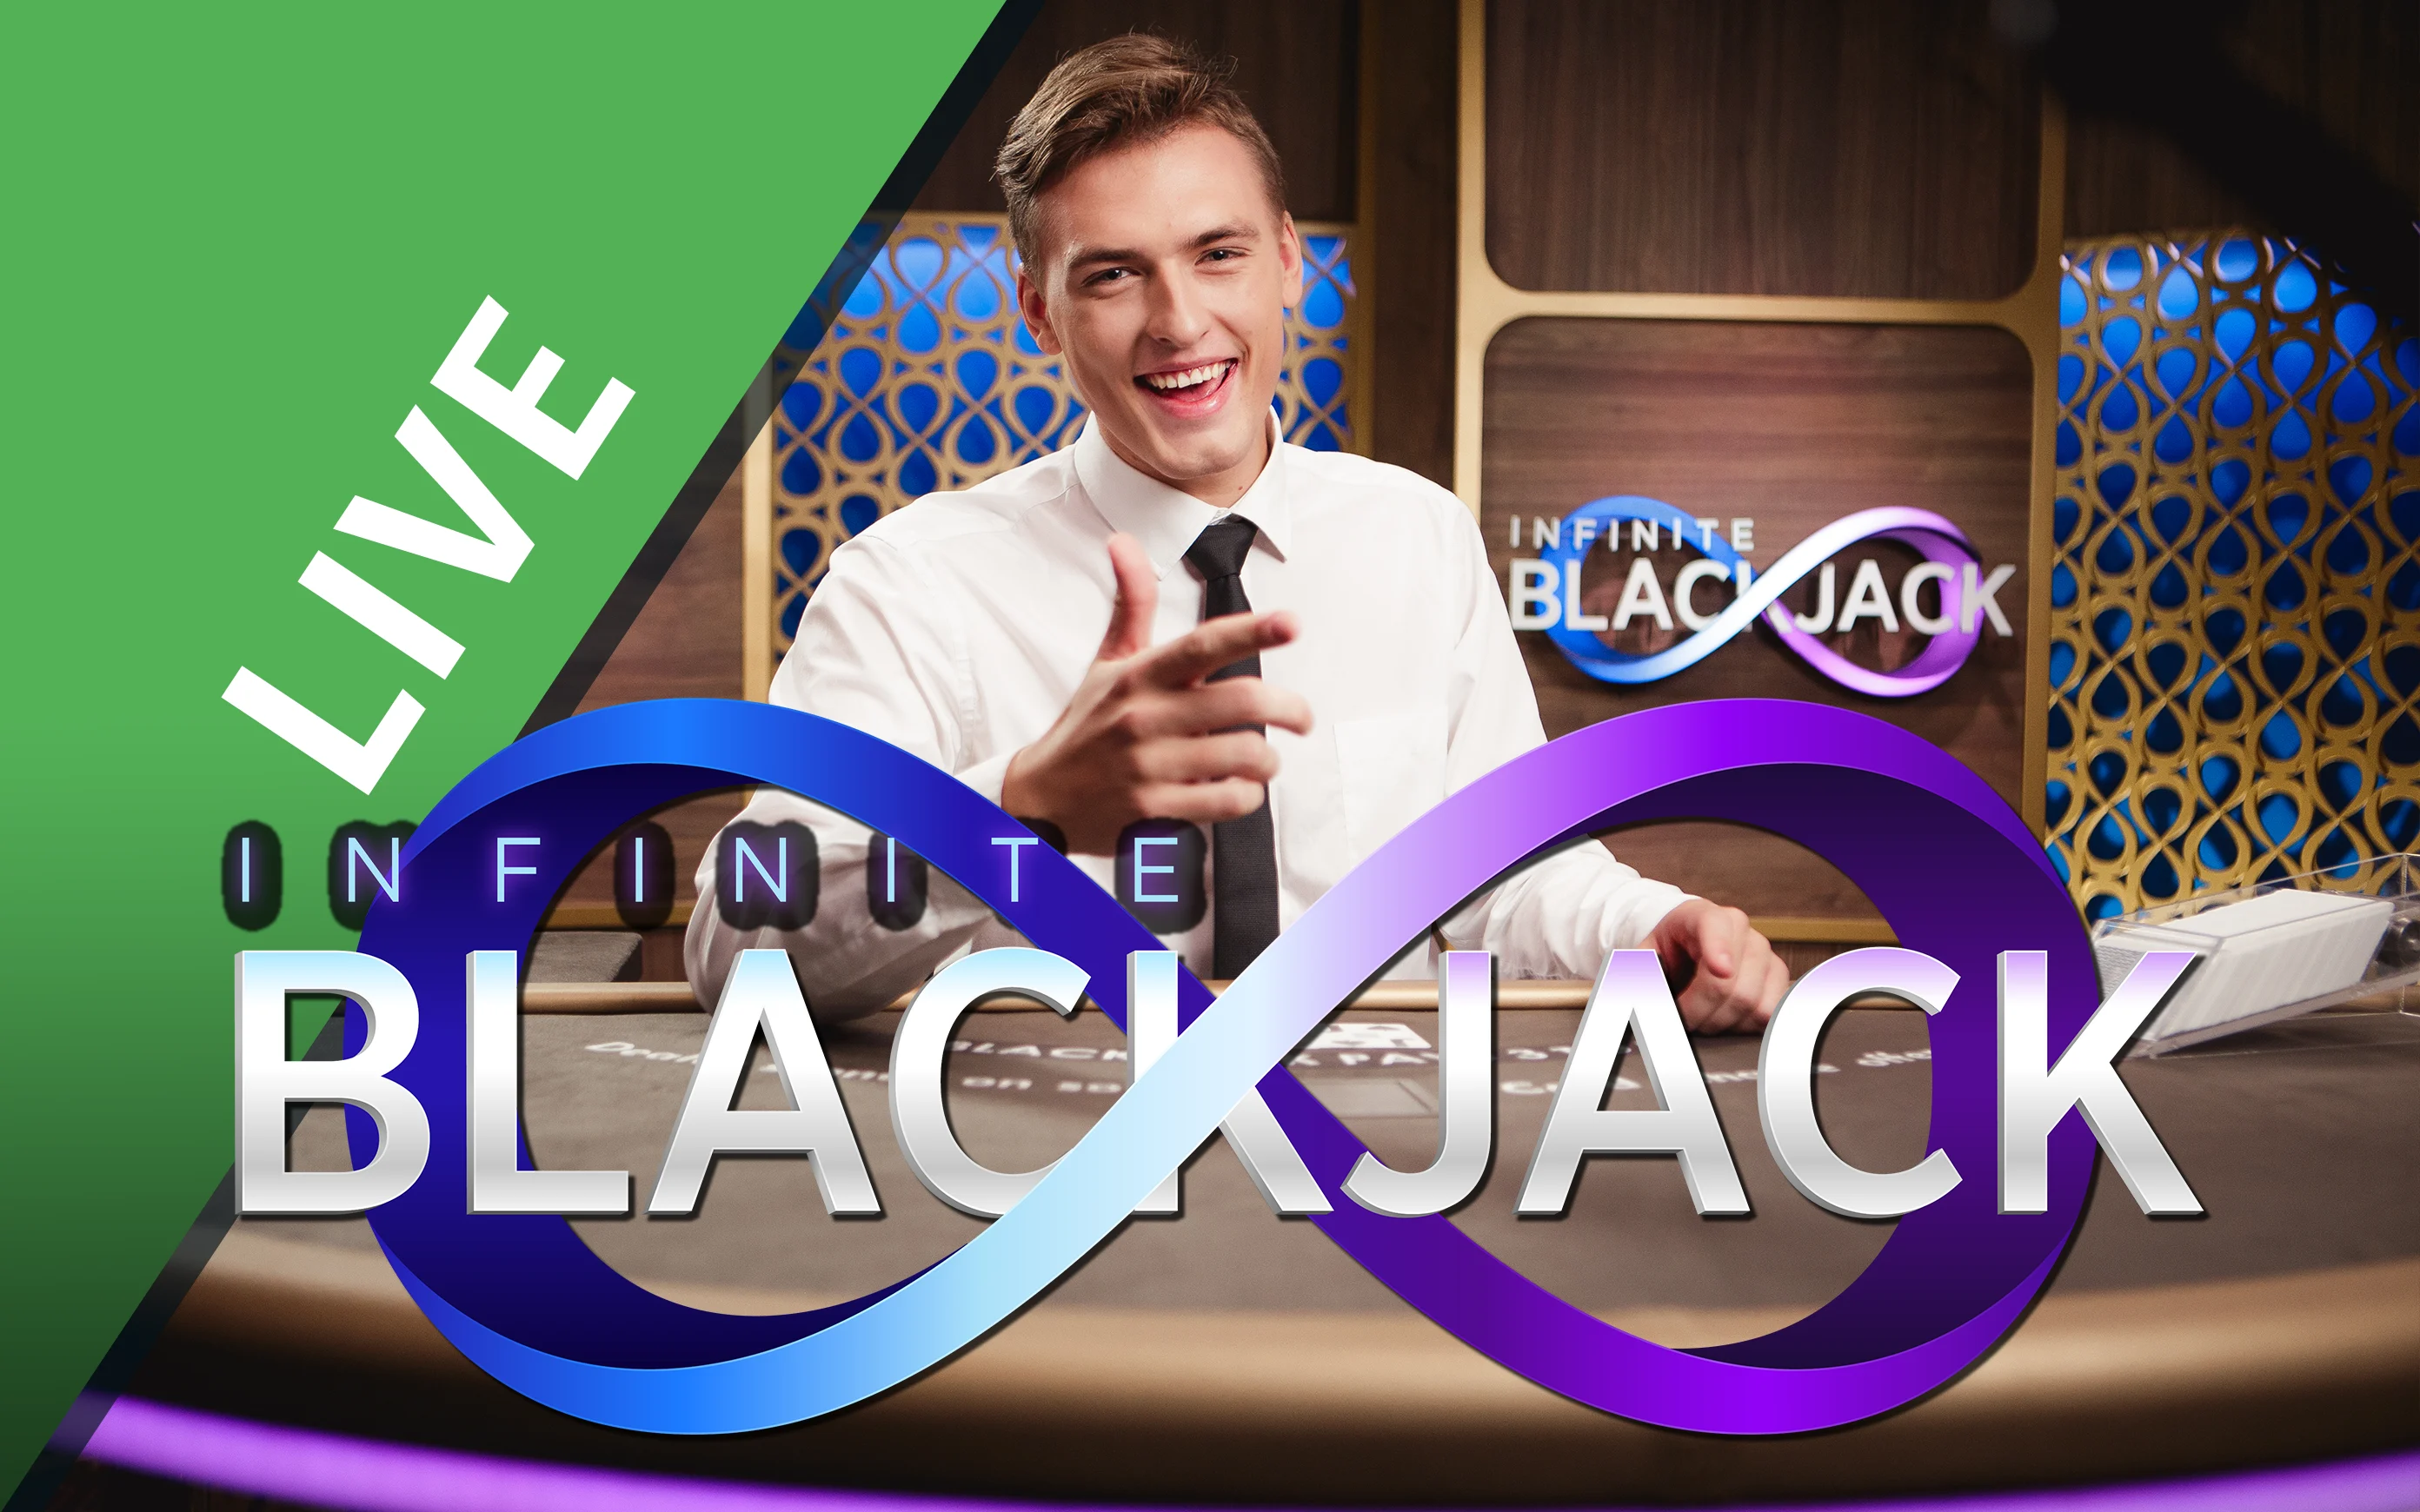 Play Infinite Blackjack on Starcasino.be online casino